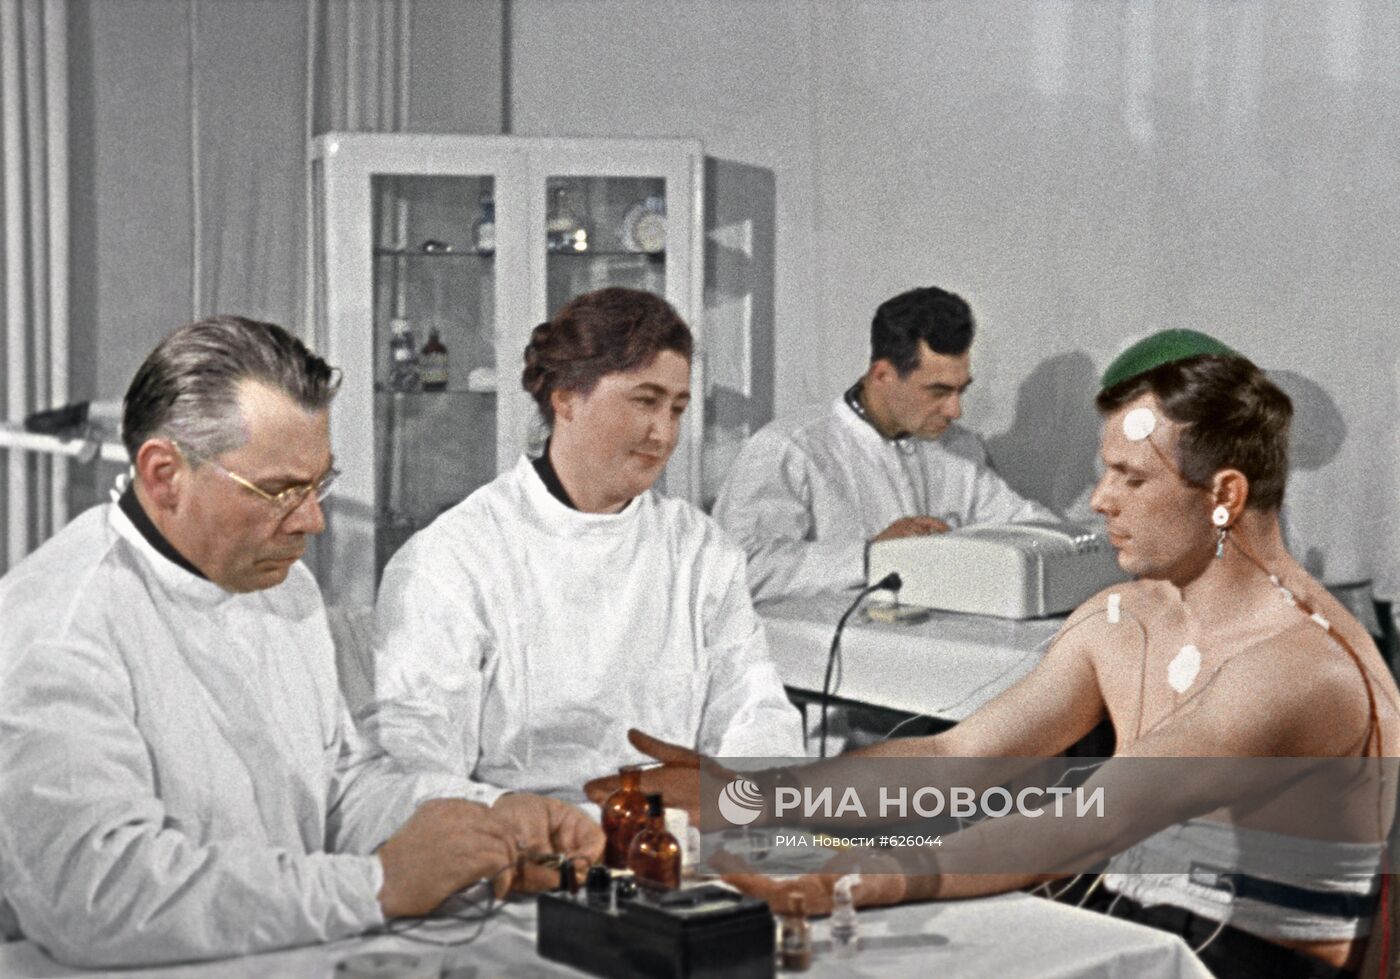 Юрий Гагарин во время медицинского осмотра перед полетом в космос.